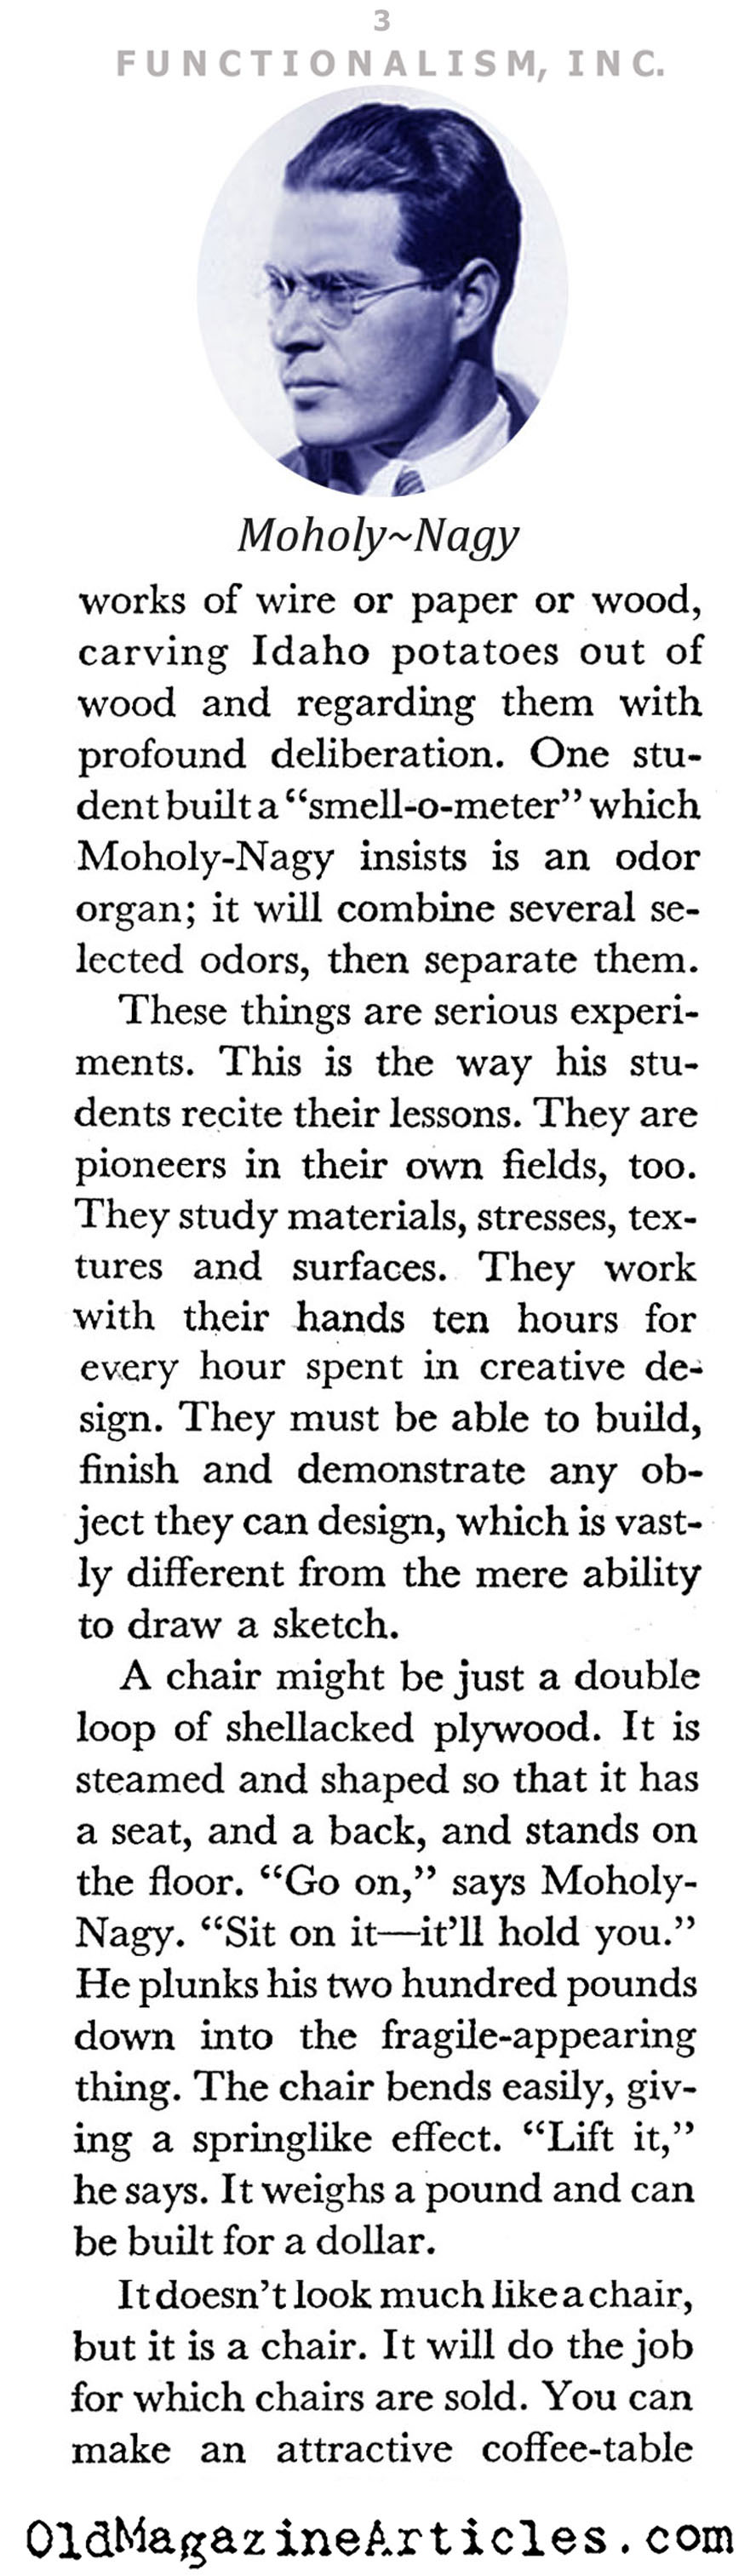 Moholy-Nagy and the New Bauhaus (Coronet Magazine, 1941)